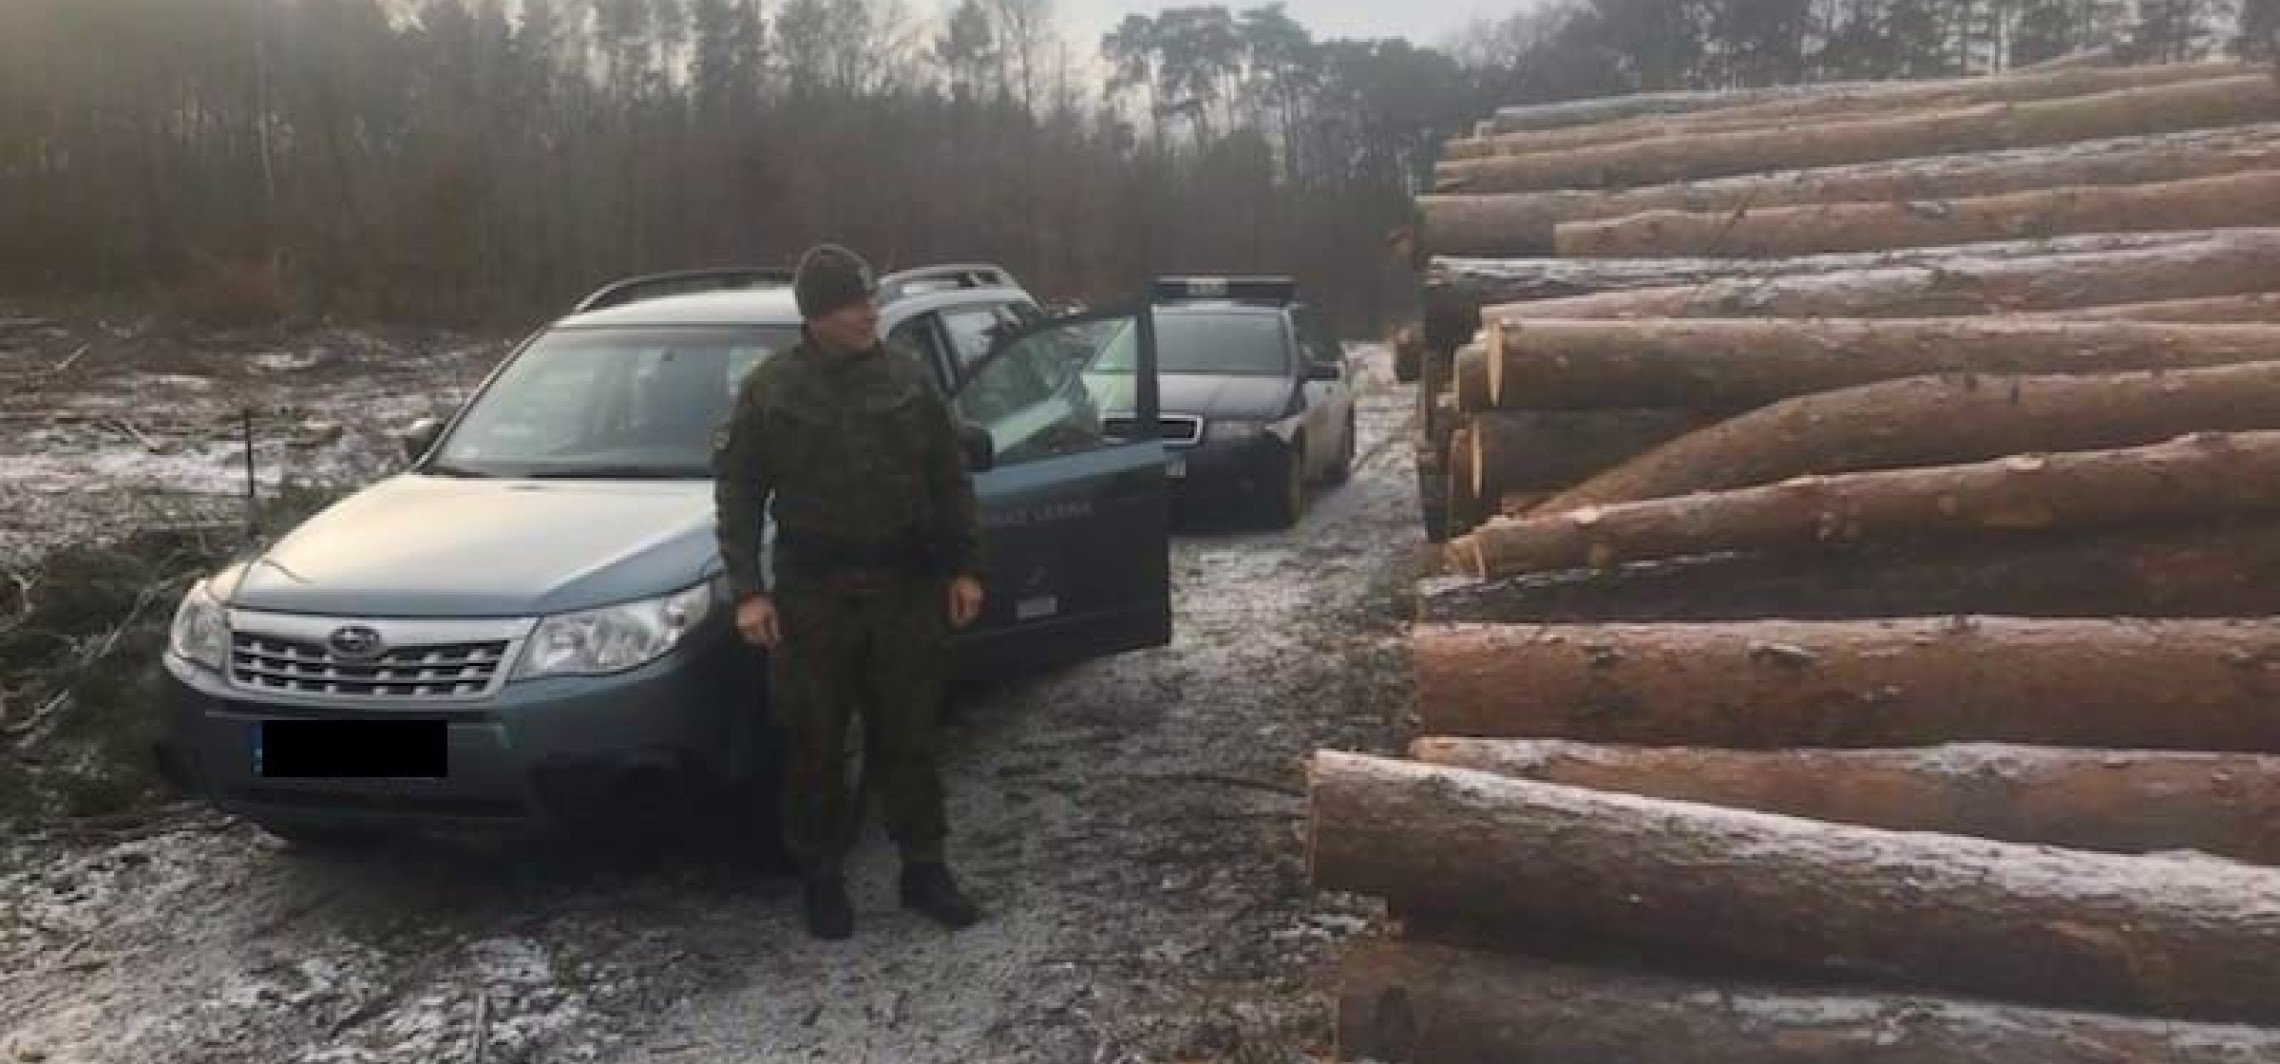 Gniewkowo - Policja i leśnicy kontrolują lasy